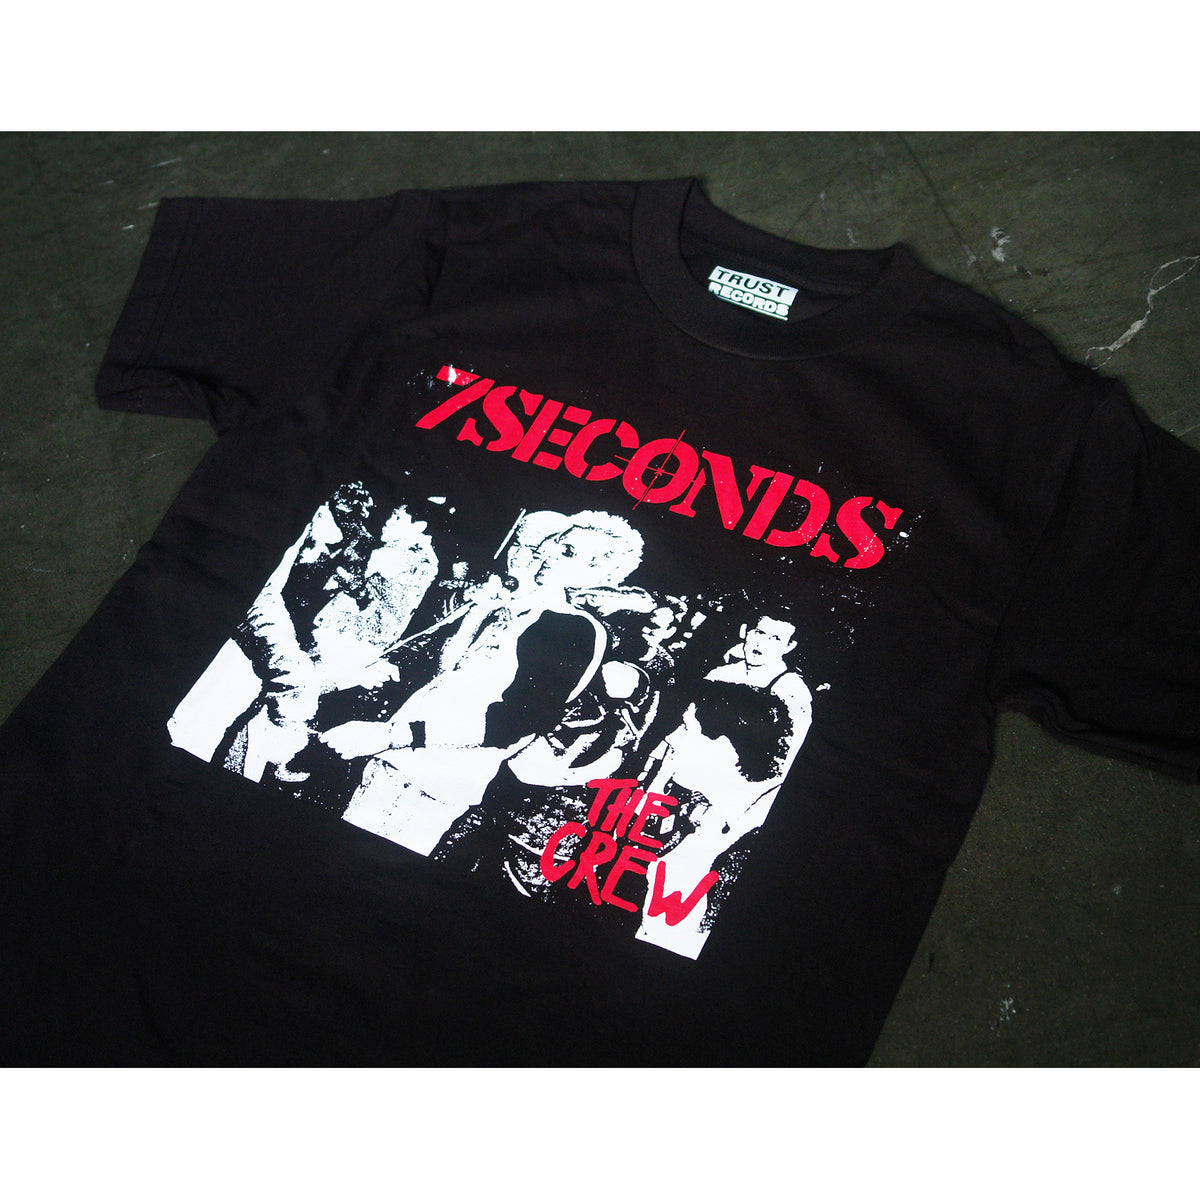 7 Seconds The Crew Album Black T-Shirt